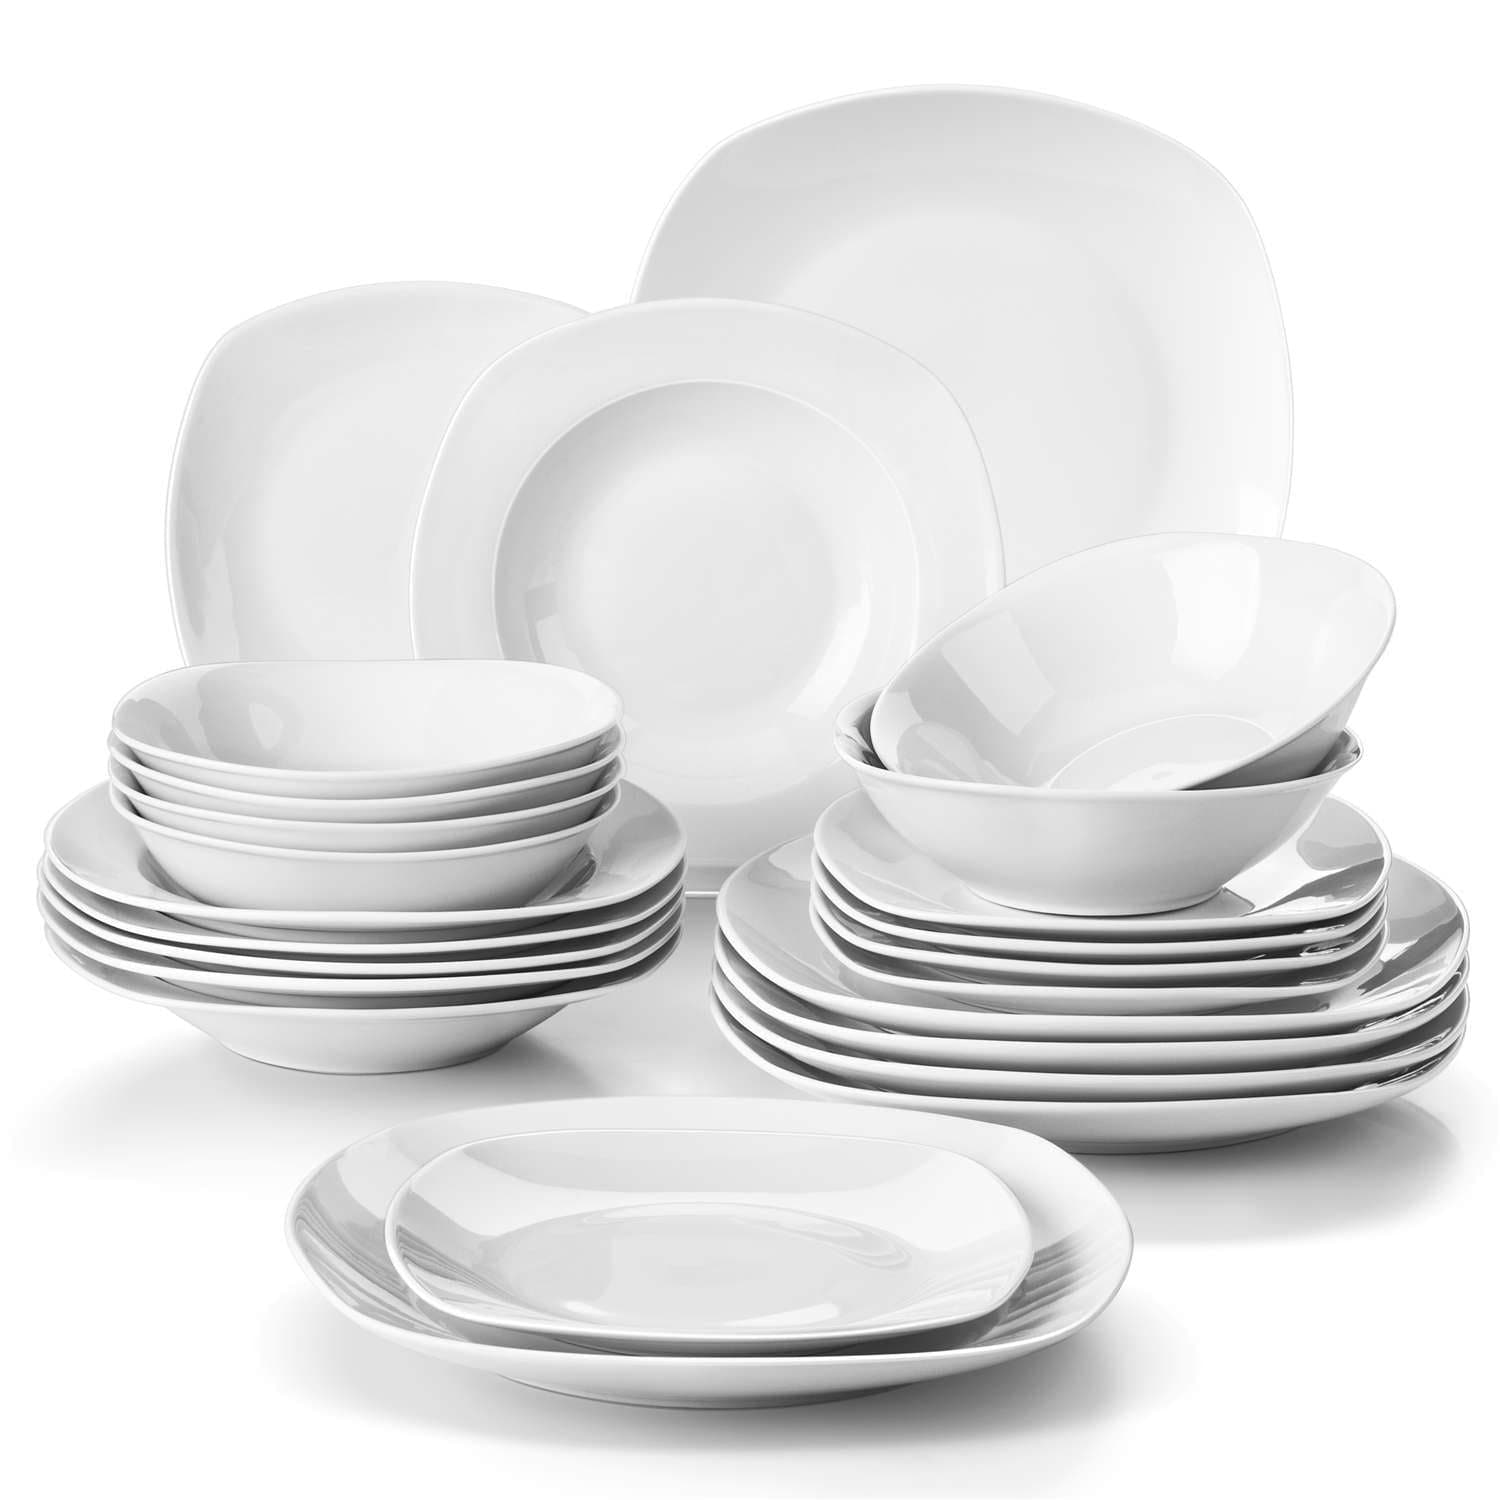 MALACASA, Série Elisa 100pcs Service de Table Complets Porcelaine